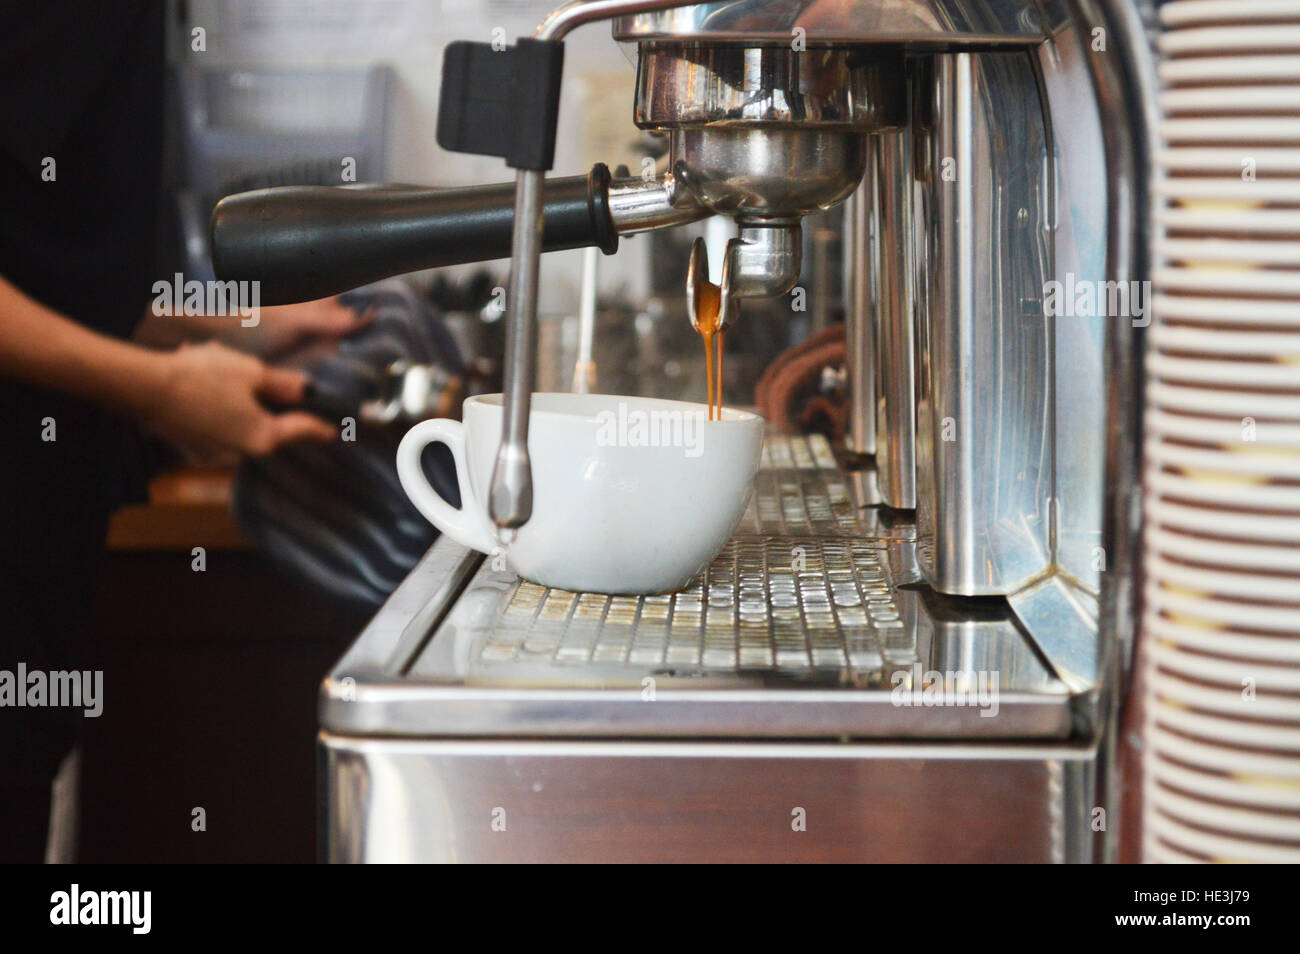 CARDIFF, Royaume-Uni. 13 octobre 2016. Café dans le point d'être faite dans le Plan cafe dans les Morgan Arcade. © Jessica Gwynne - Photographe indépendant Banque D'Images